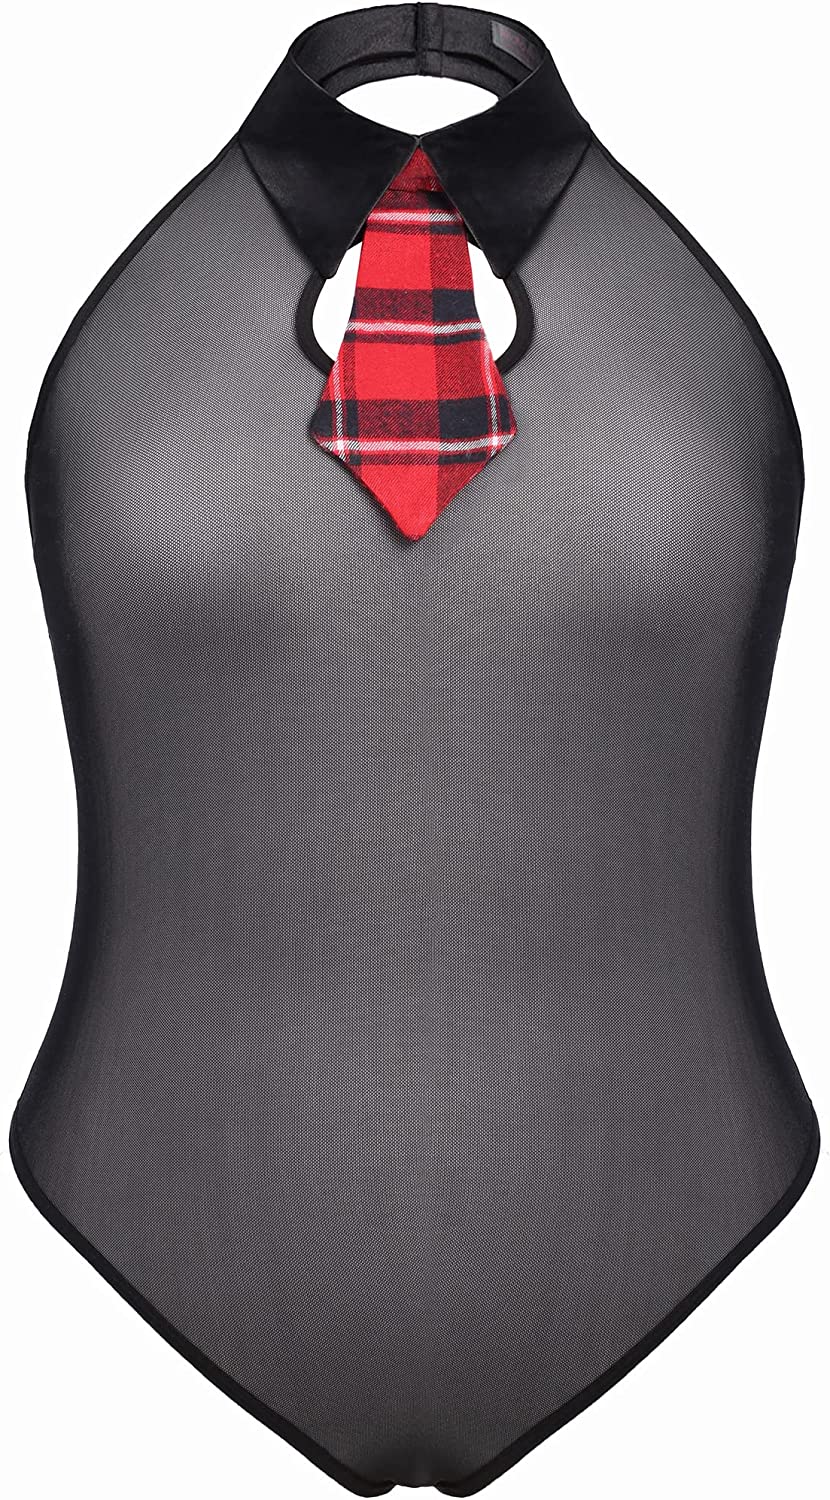 Avidlove Plus Size Lingerie Lingerie Set with Tie Halter Snap Crotch Teddy Bodysuit Plaid Skirt L-4XL